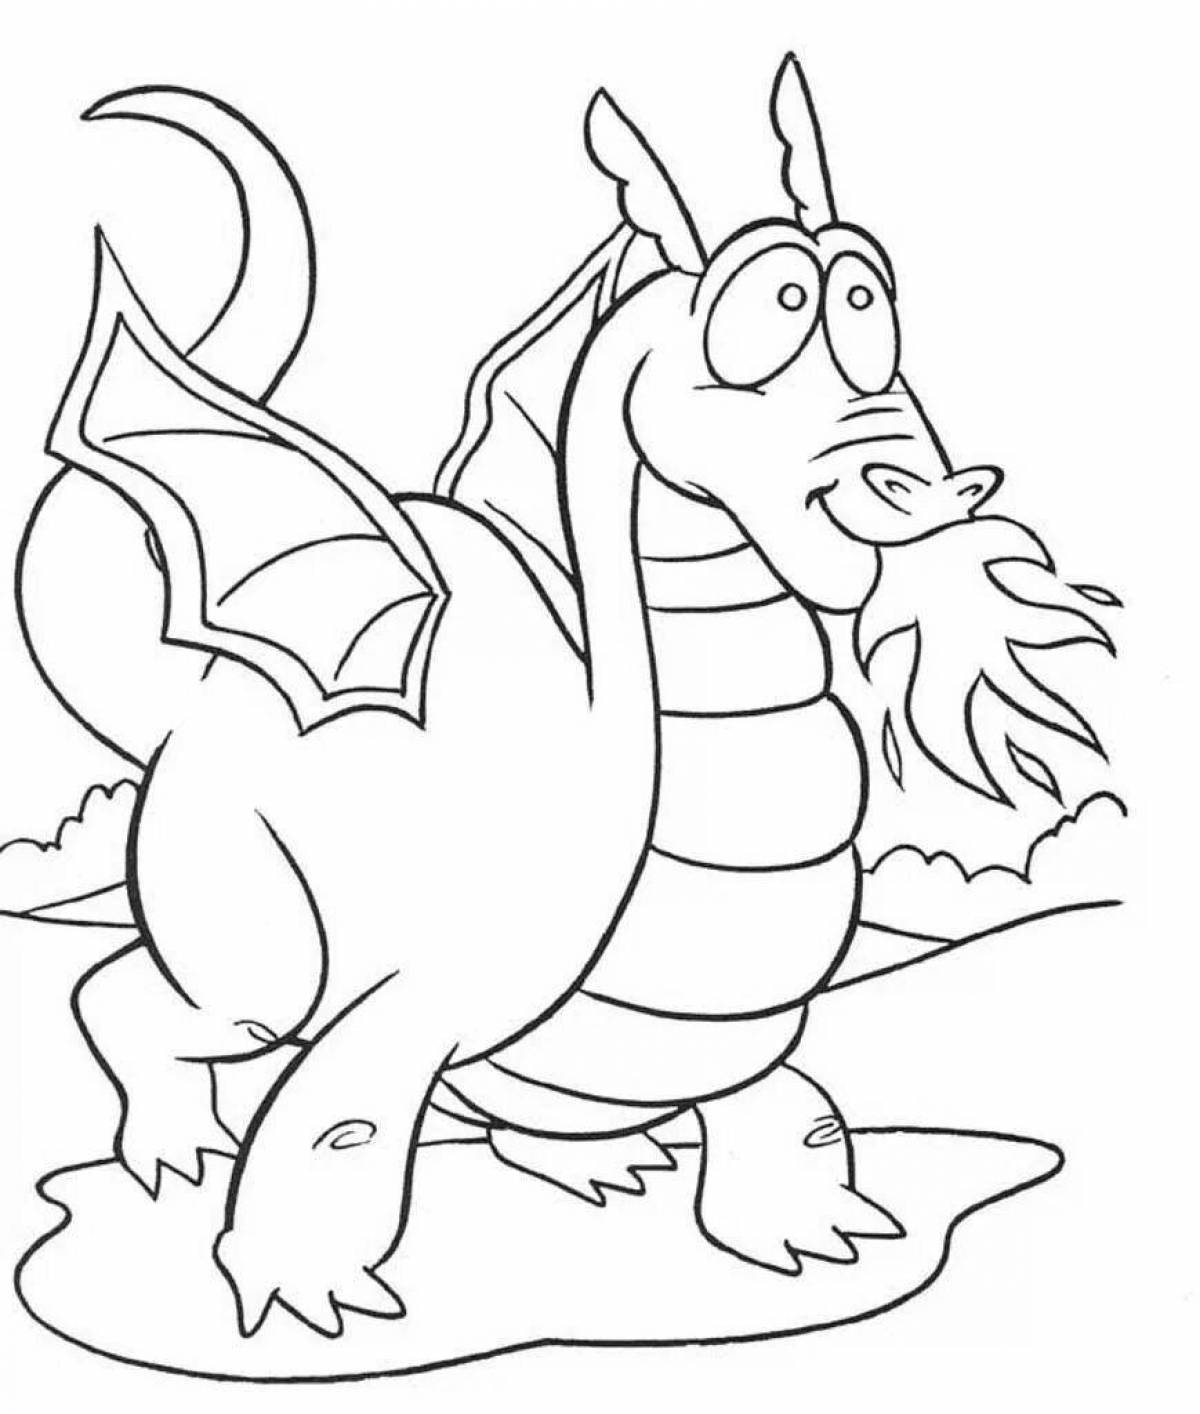 Драматическая раскраска дракон для детей 7 лет